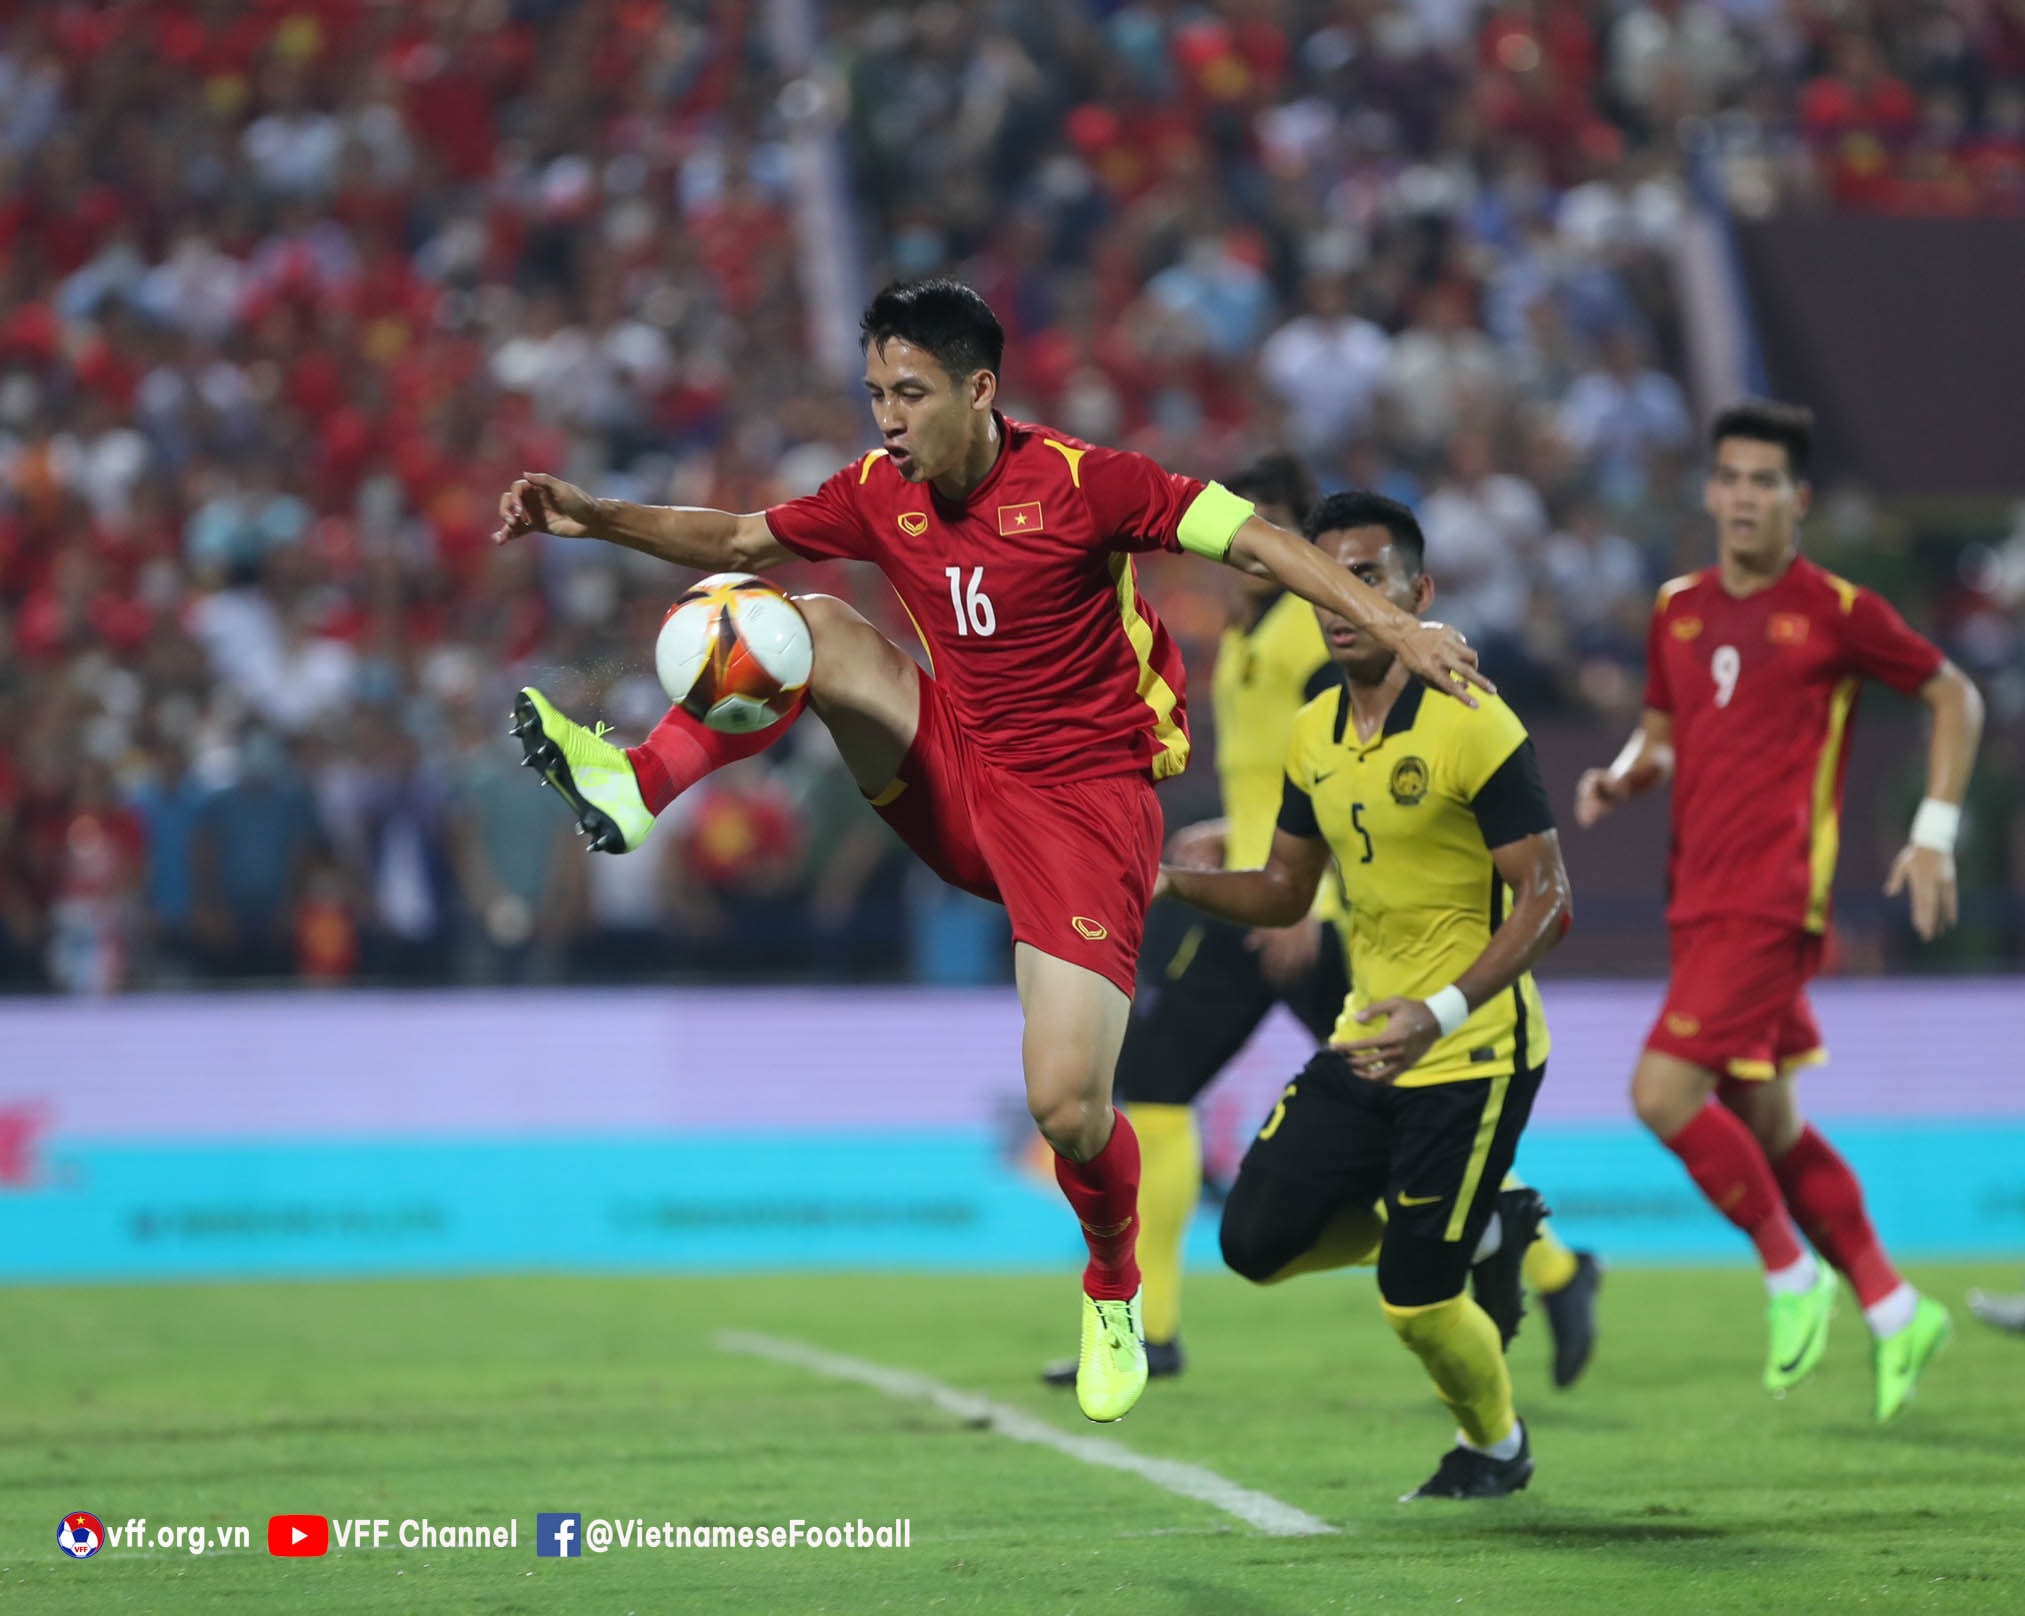 Hùng Dũng - thủ lĩnh U23 Việt Nam, một trong những cầu thủ chơi tốt nhất từ đầu giải (ảnh: VFF).